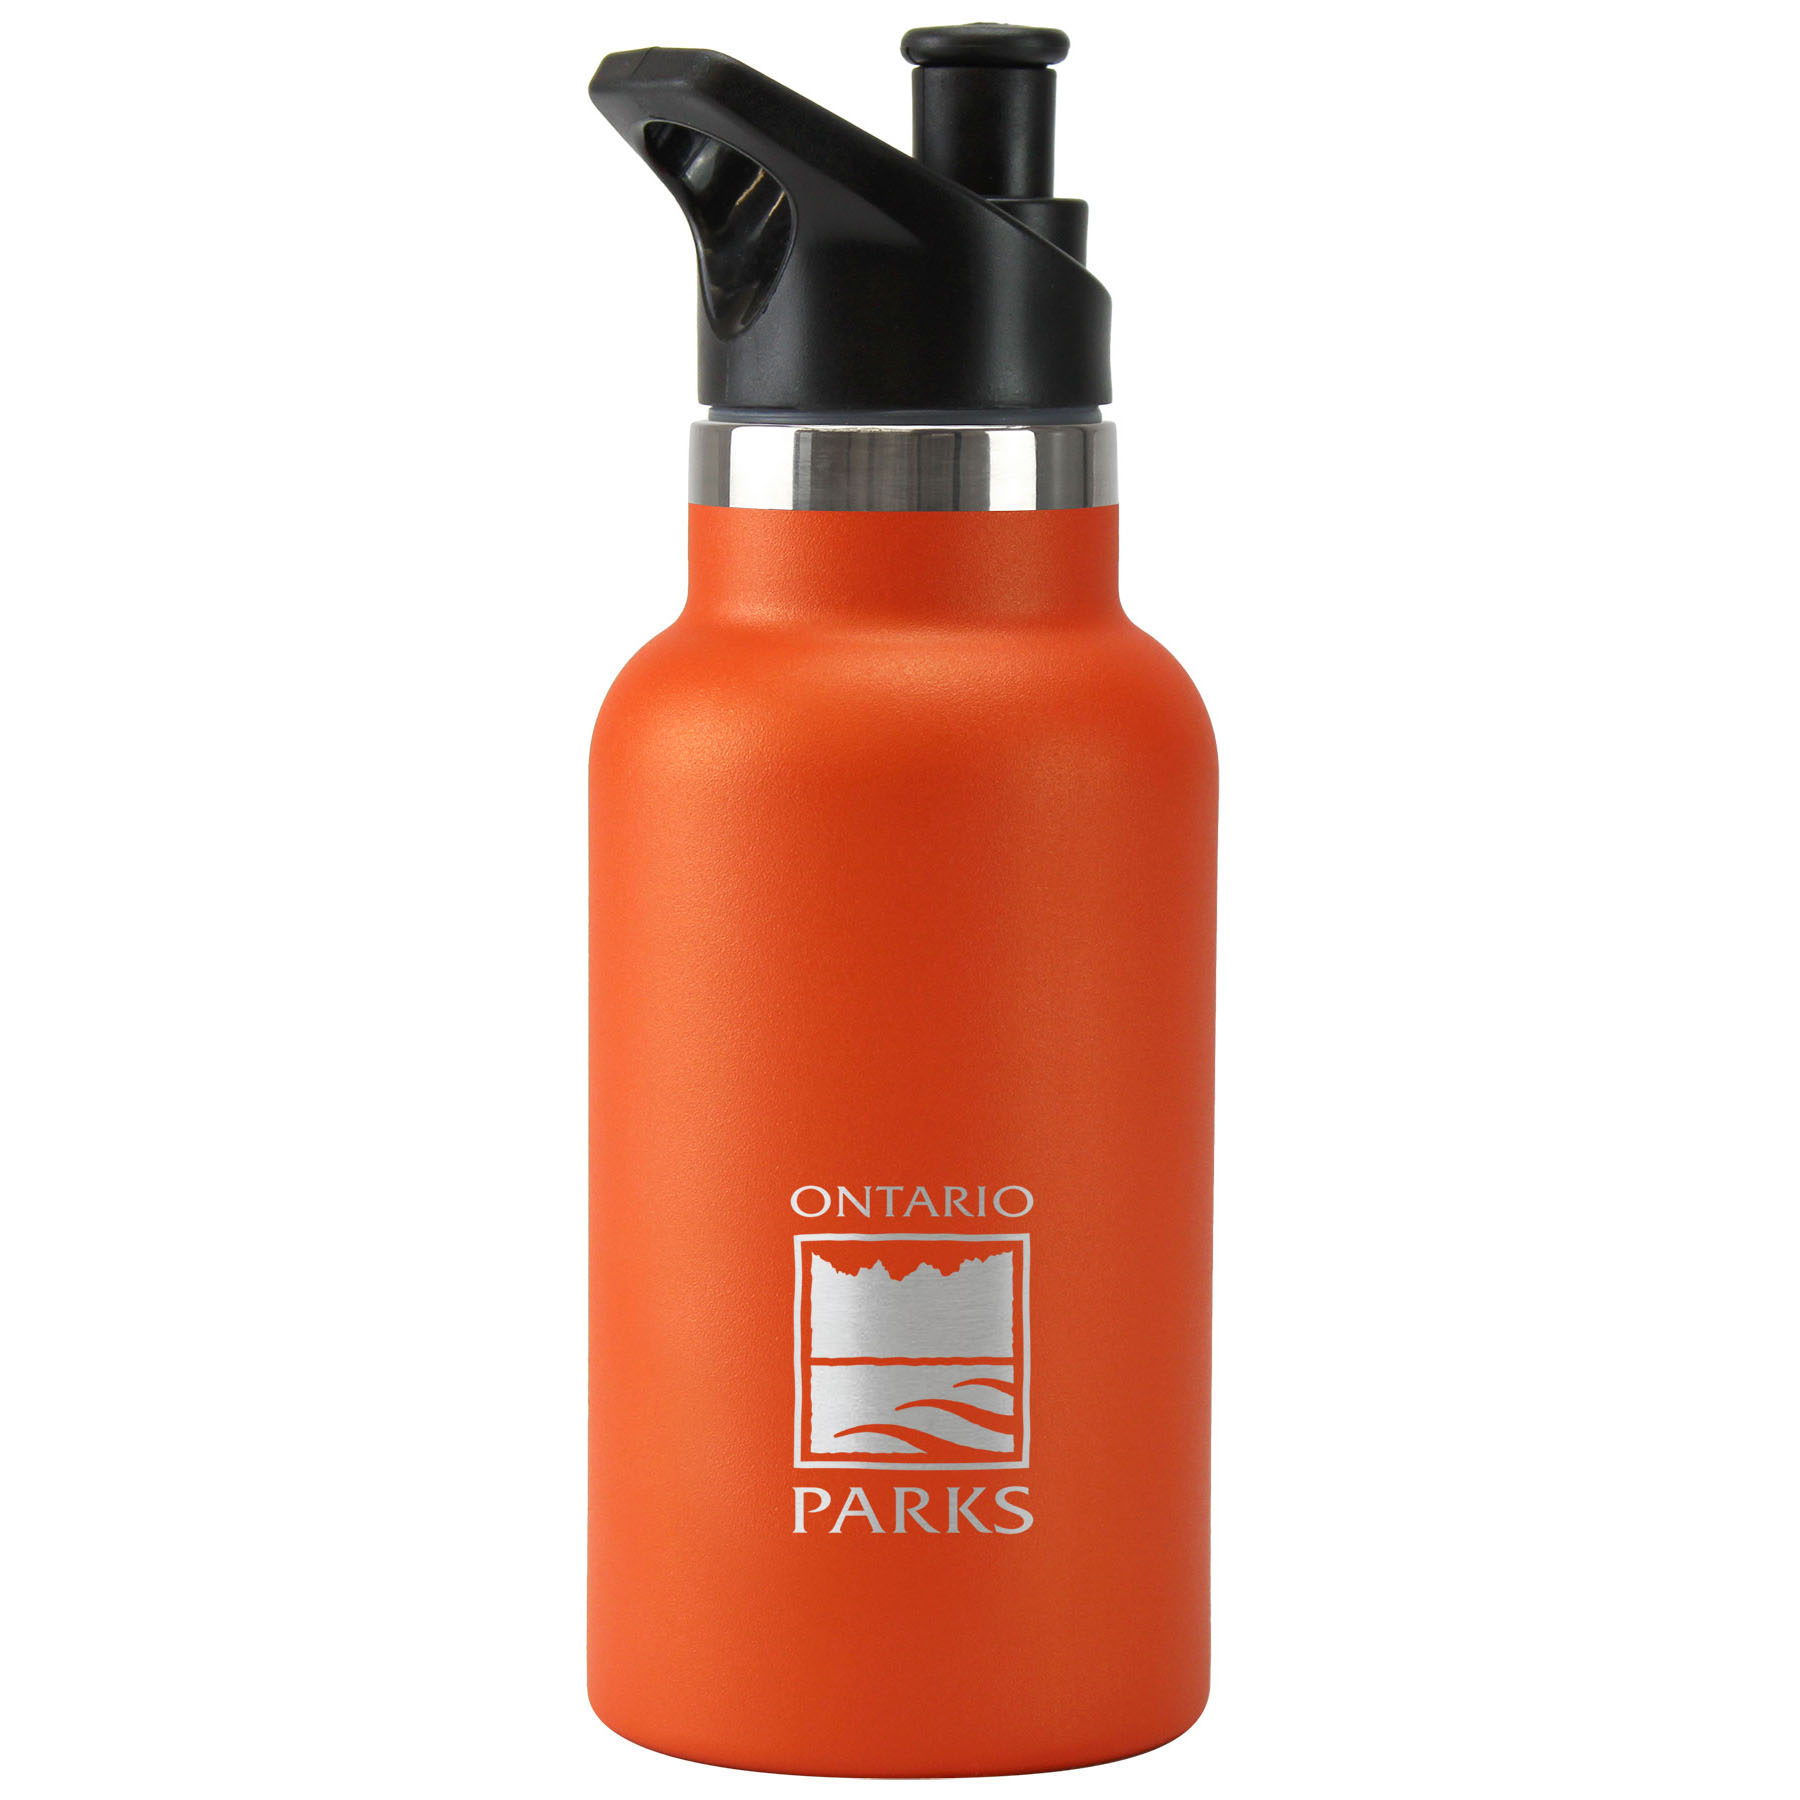 Une bouteille réutilisable robuste avec un bouchon noir et un corps orange, ornée du logo de Parcs Ontario